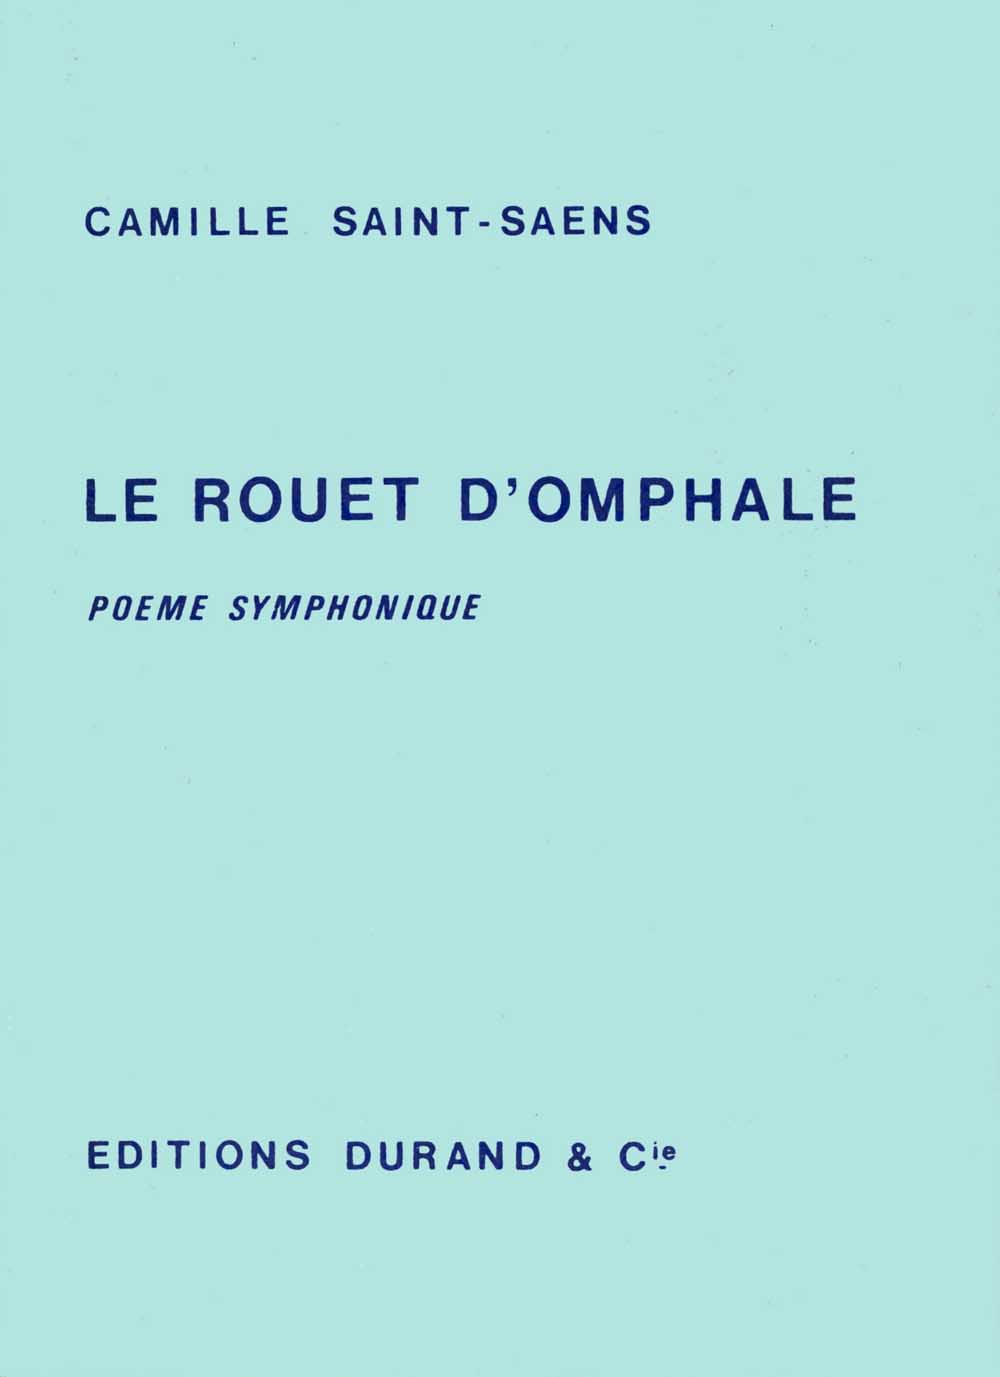 Camille Saint-Saëns: Rouet d'Omphale Poeme Symphonique: Orchestra: Study Score